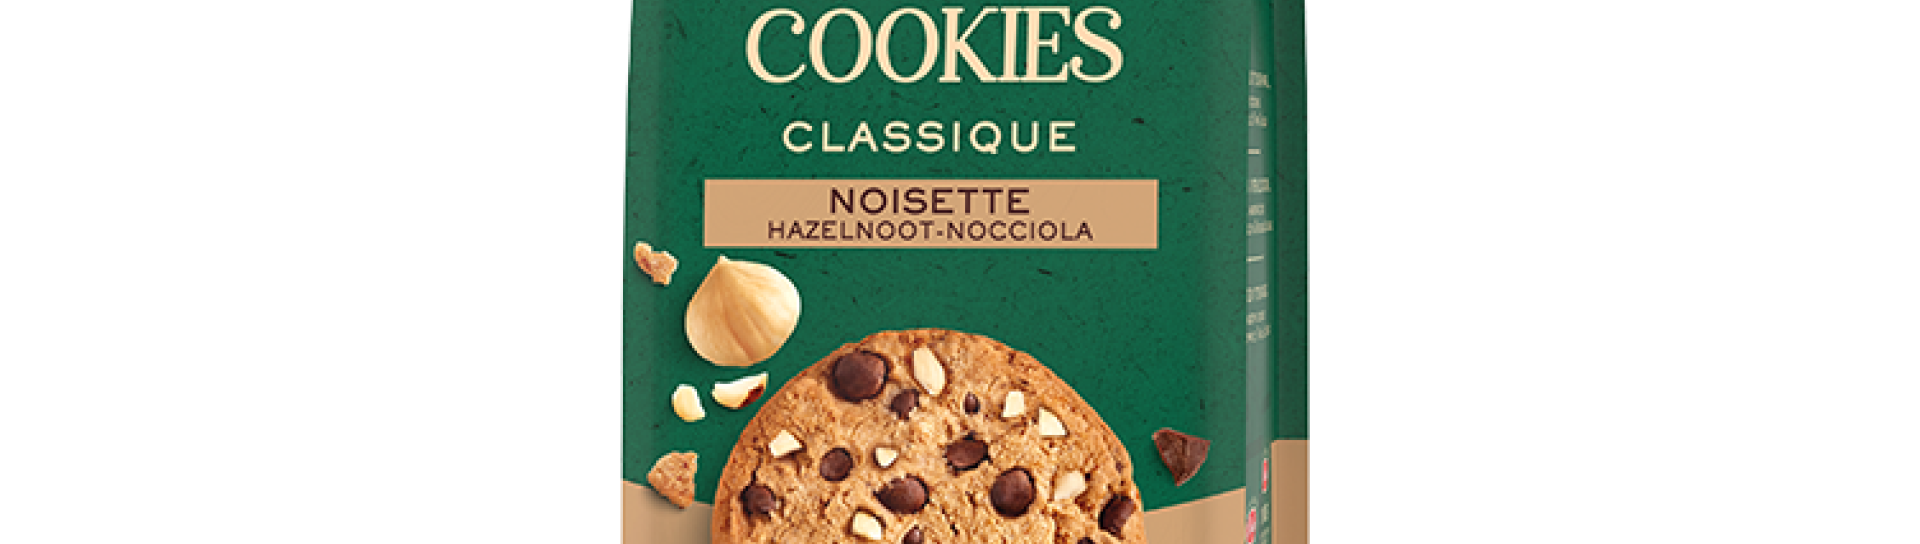 Cookies Classique Noisette